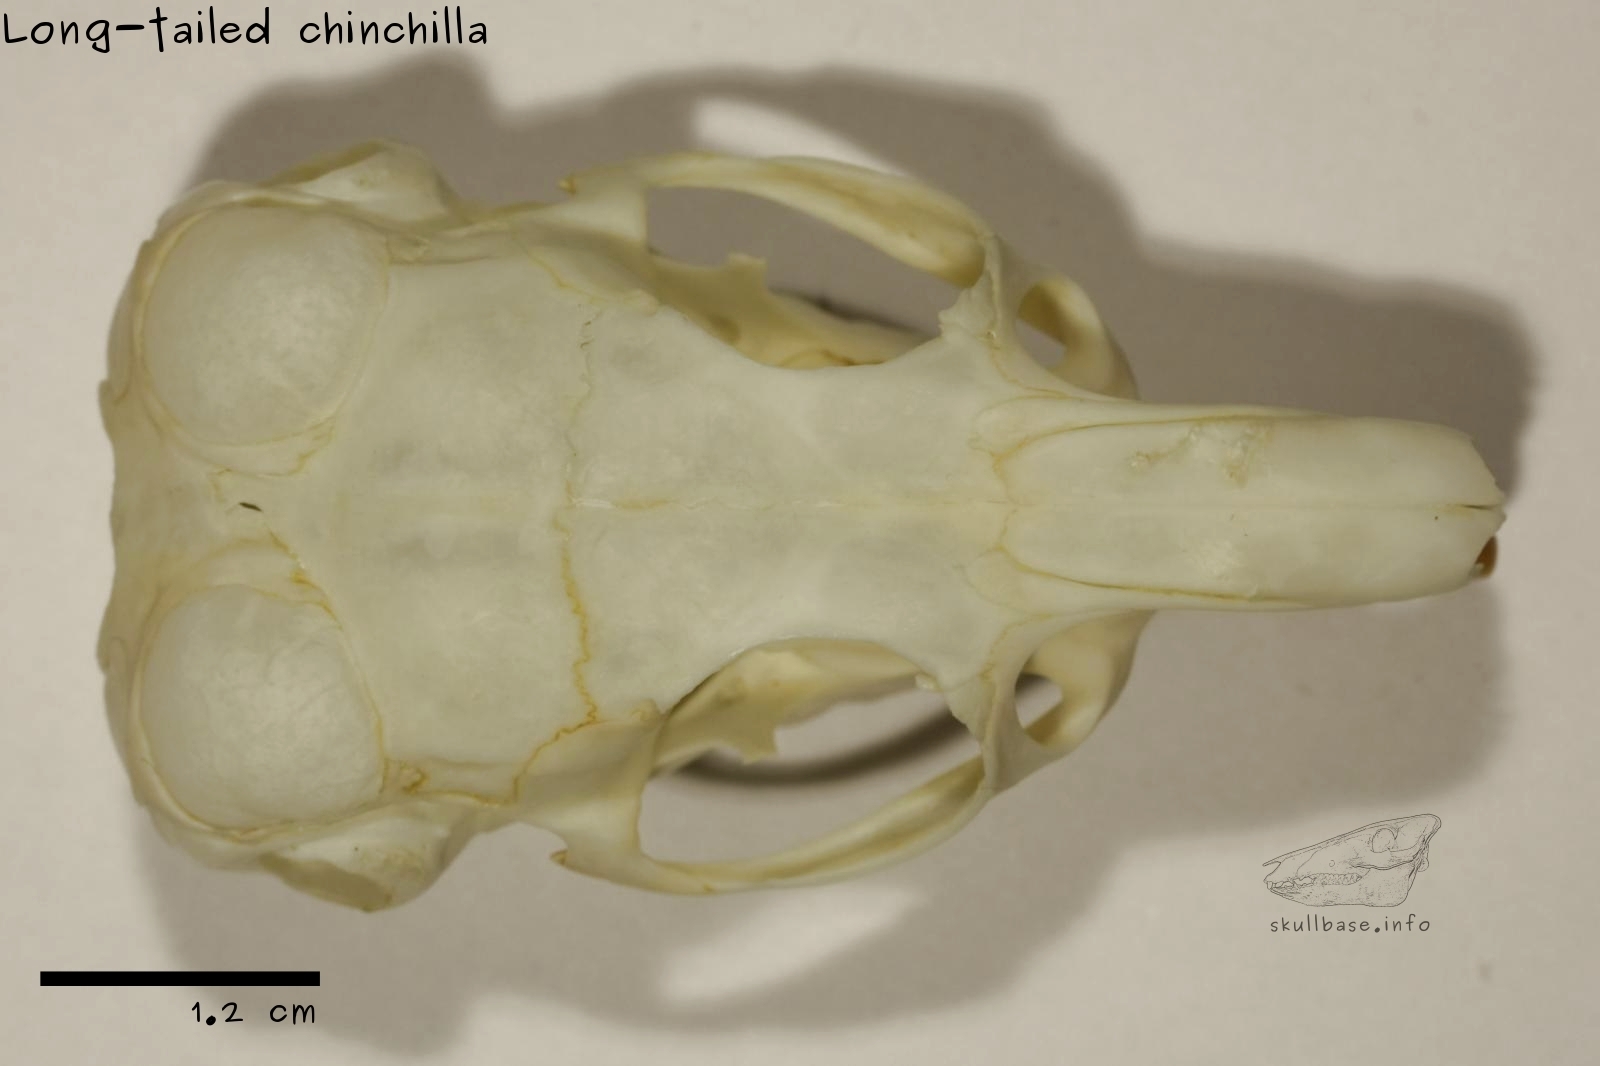 Long-tailed chinchilla (Chinchilla lanigera) skull dorsal view